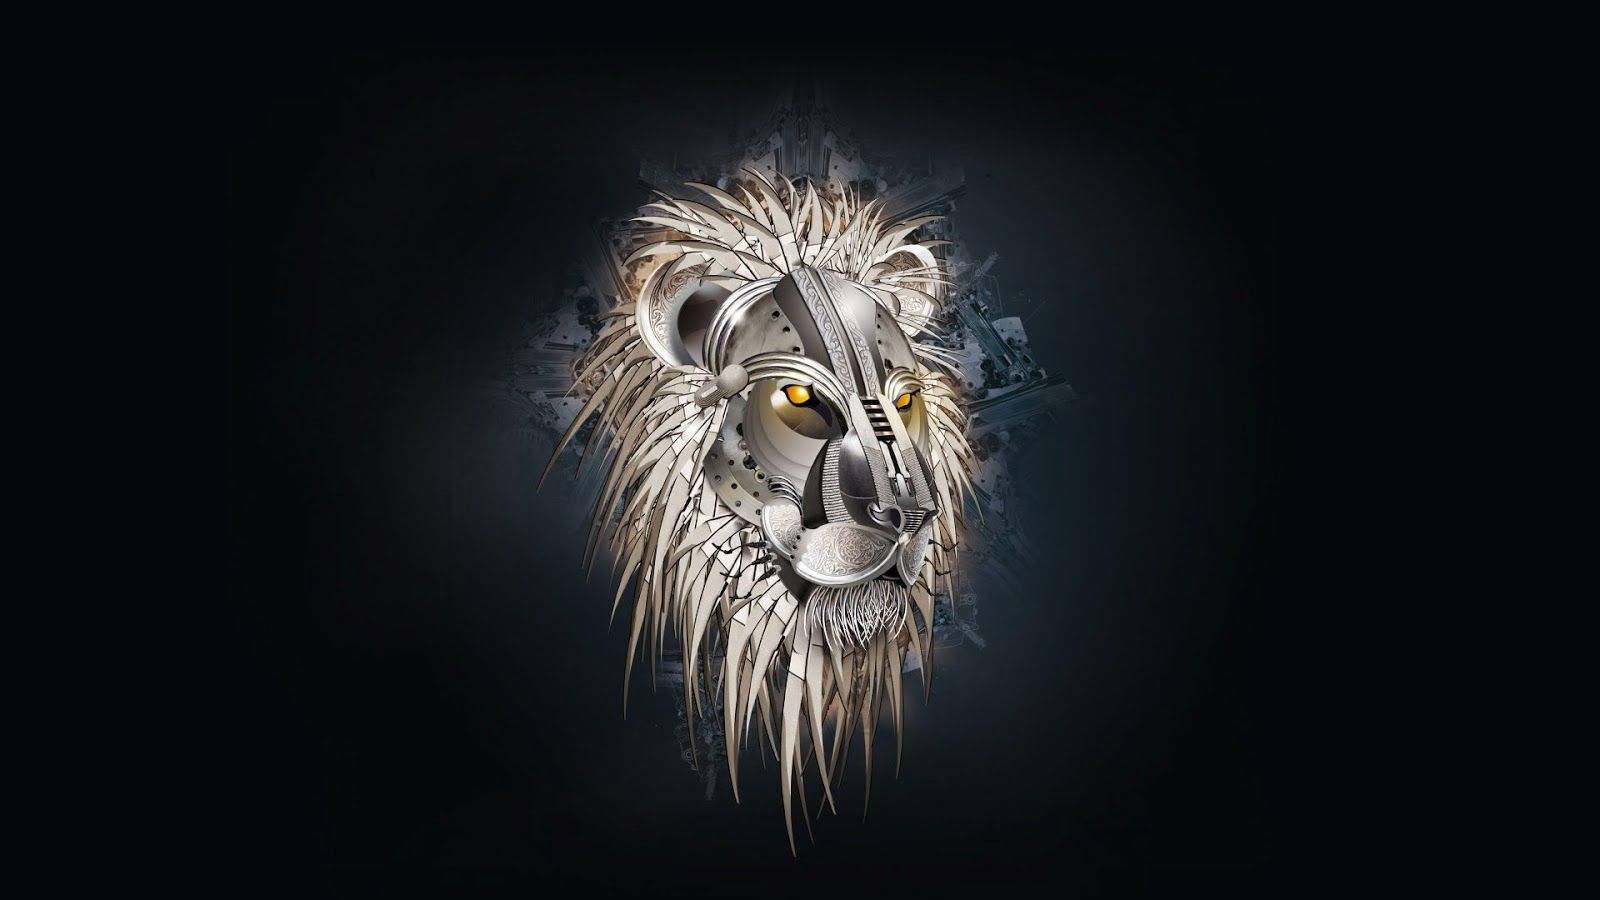 Majestic 3d Lion In Dynamic Artwork Wallpaper